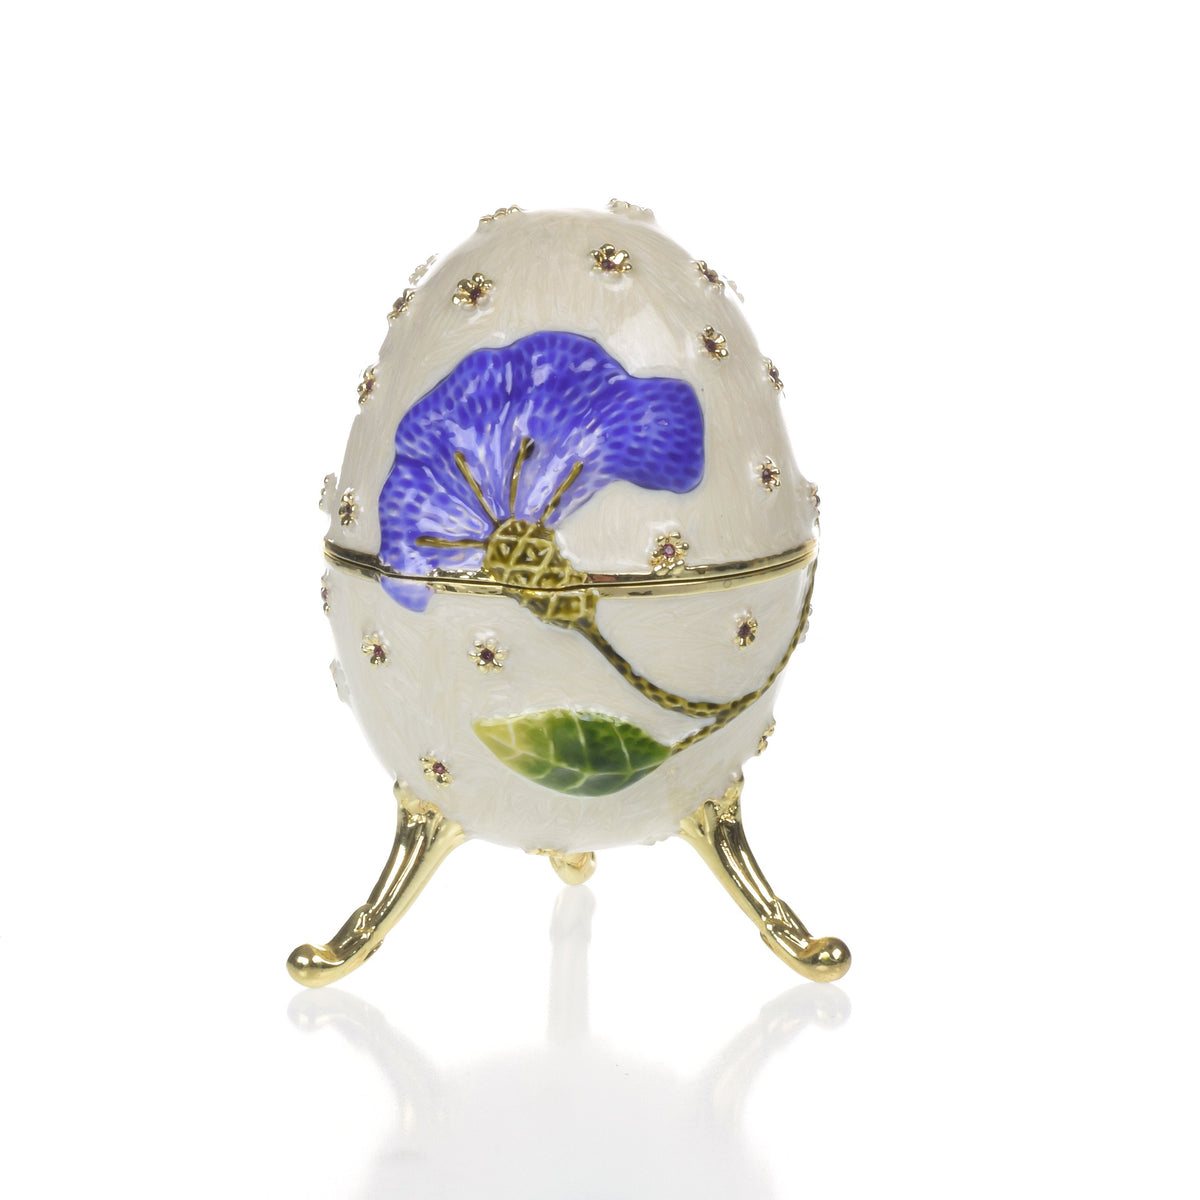 Boîte à musique blanche avec fleur bleue Fur Elise de Beethoven Faberge Egg